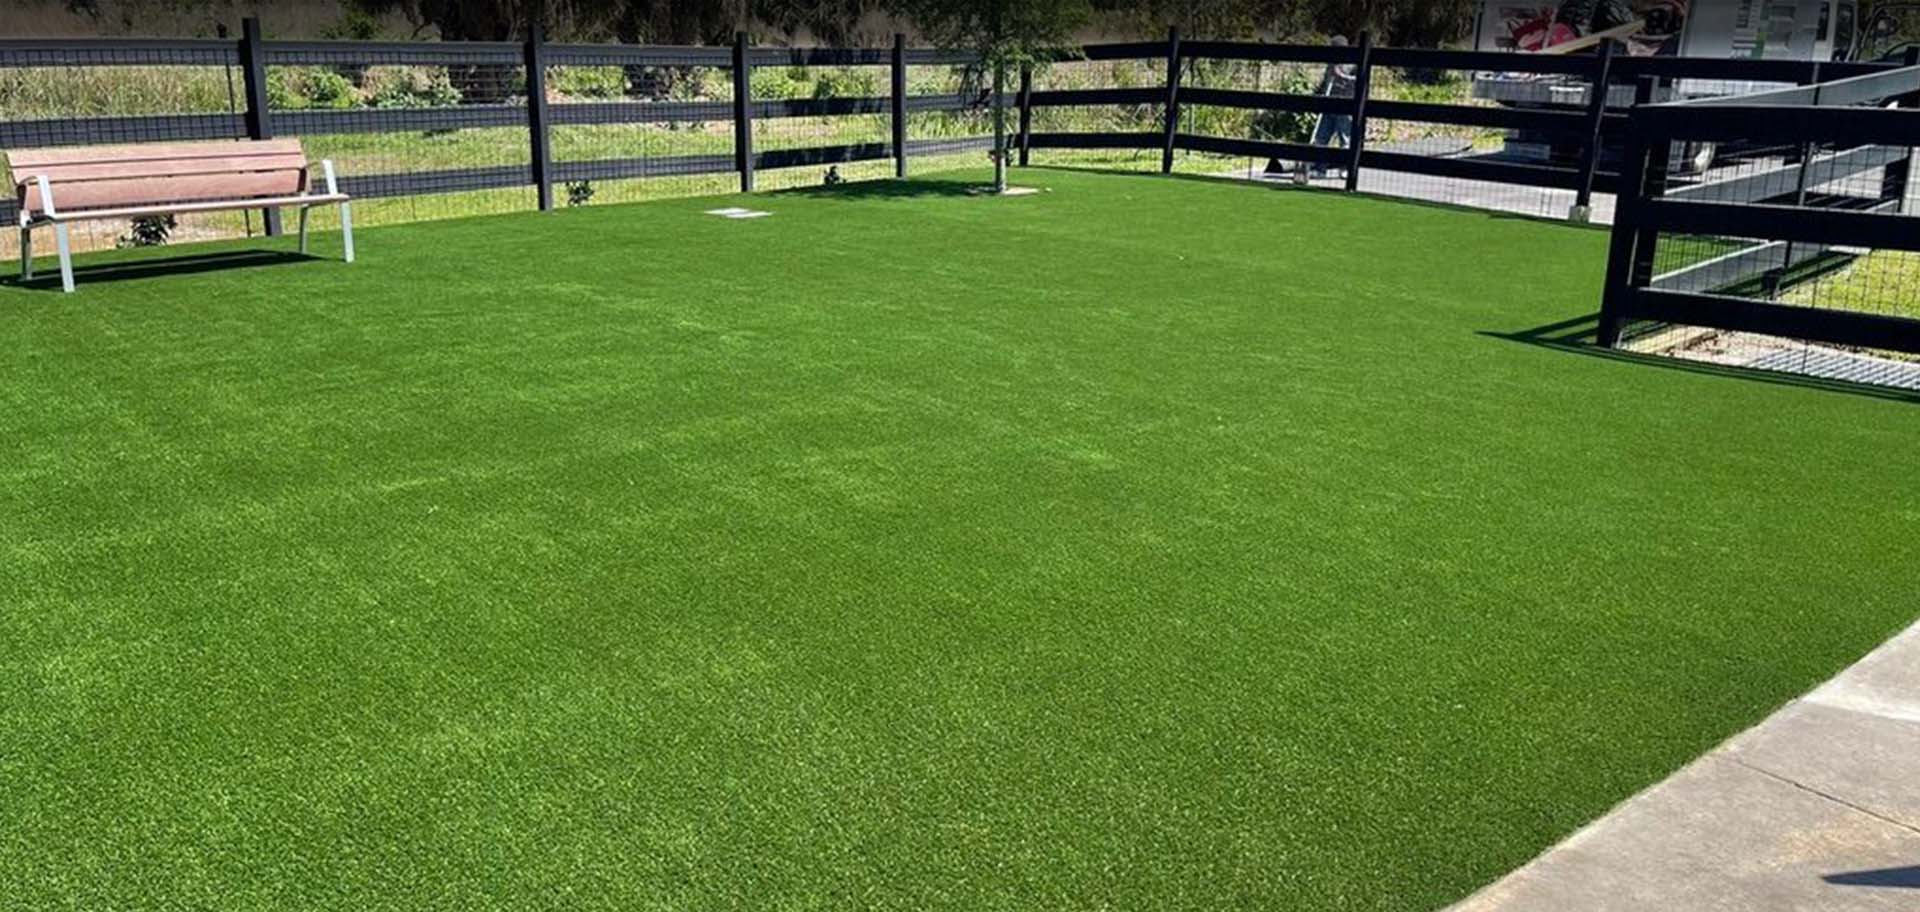 Jupiter Artificial Grass Installation, Synthetic Turf Installation and Putting Green Installation